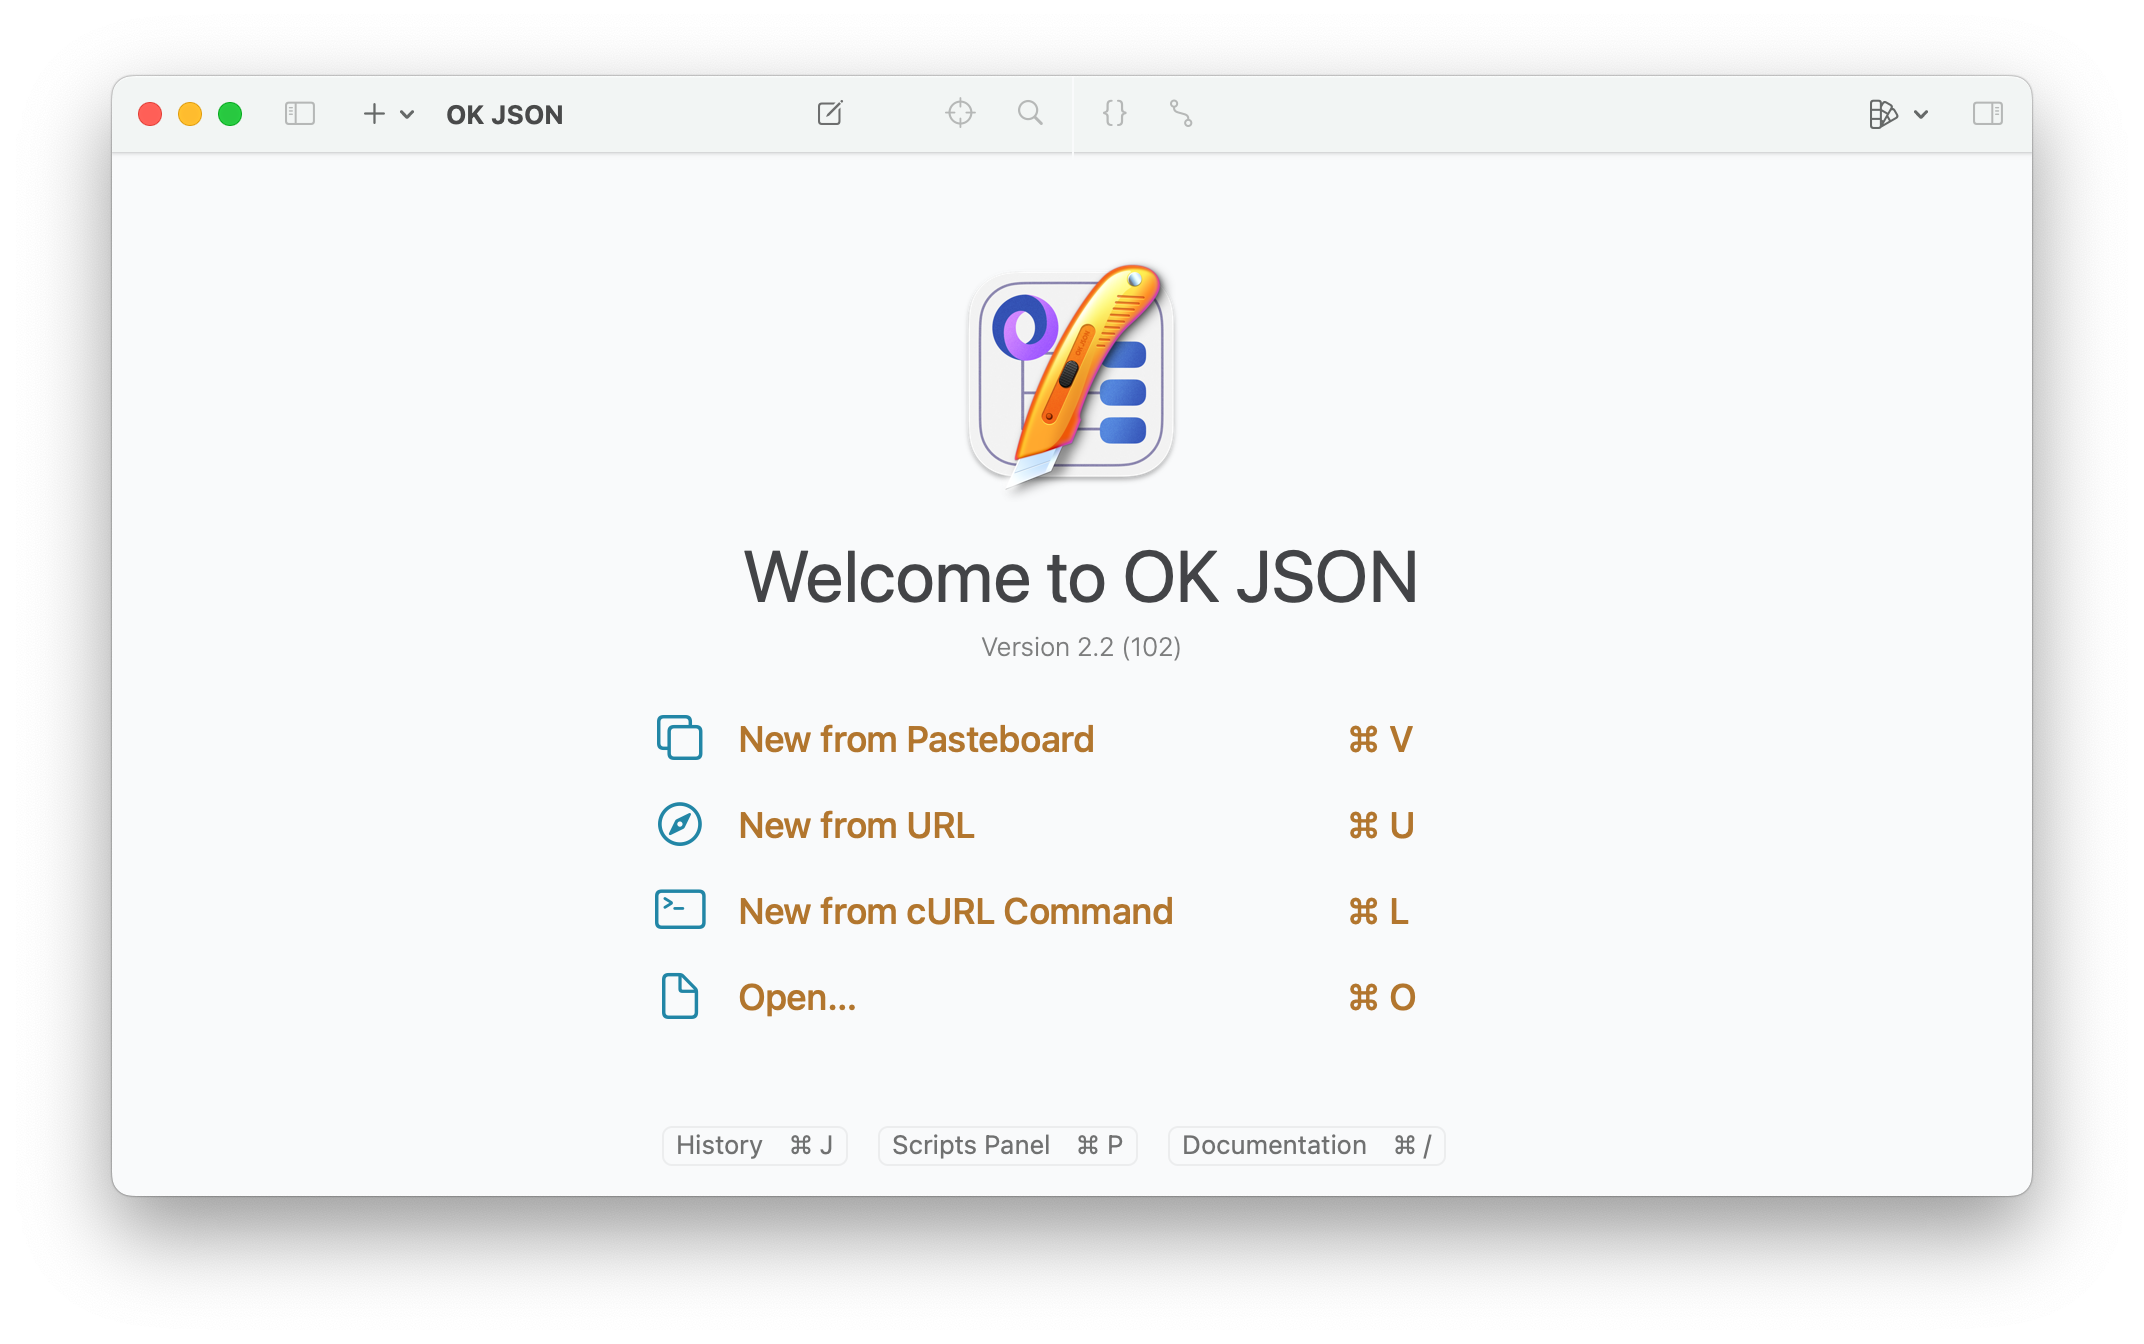 Screenshot of Launch Screen of OK JSON